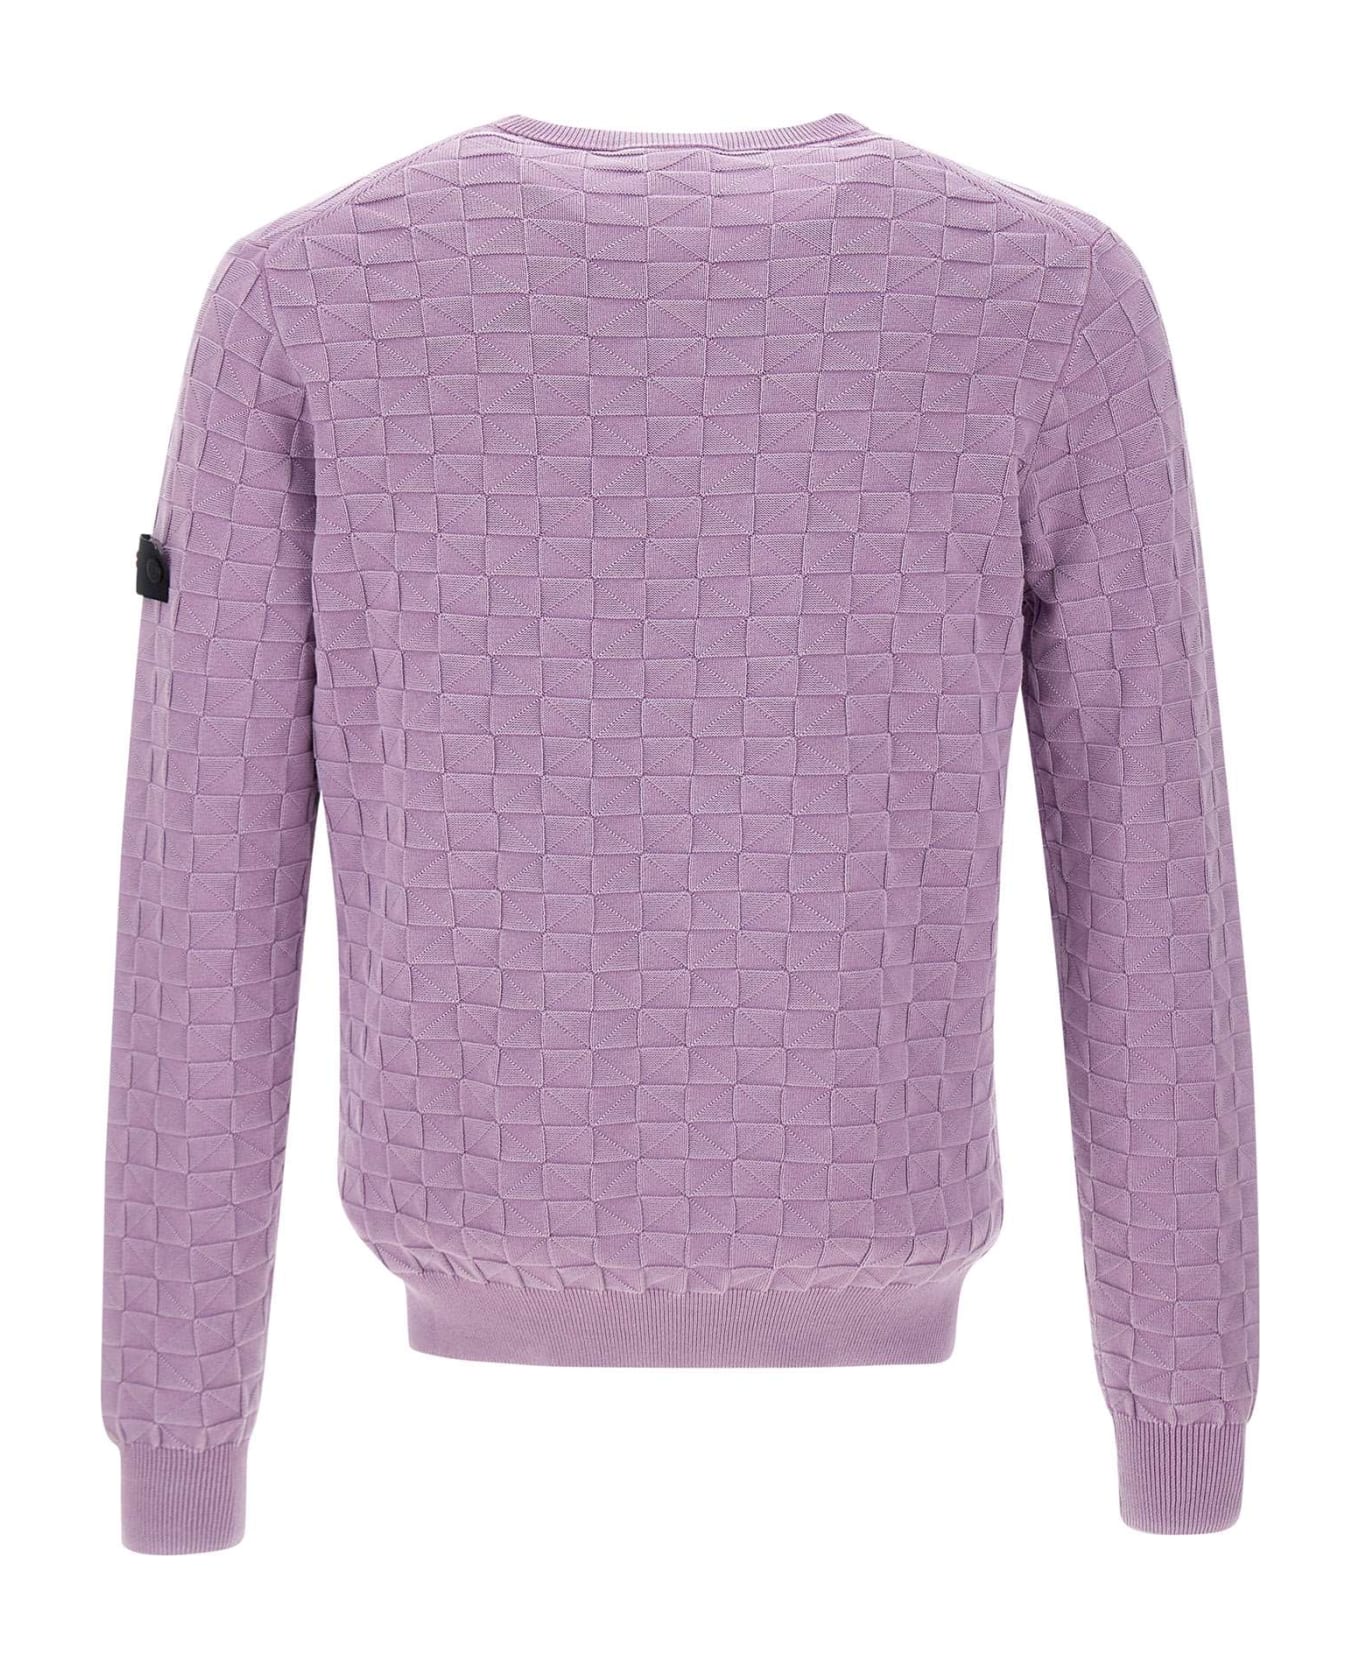 Peuterey "omnium" Cotton Sweater - LILAC